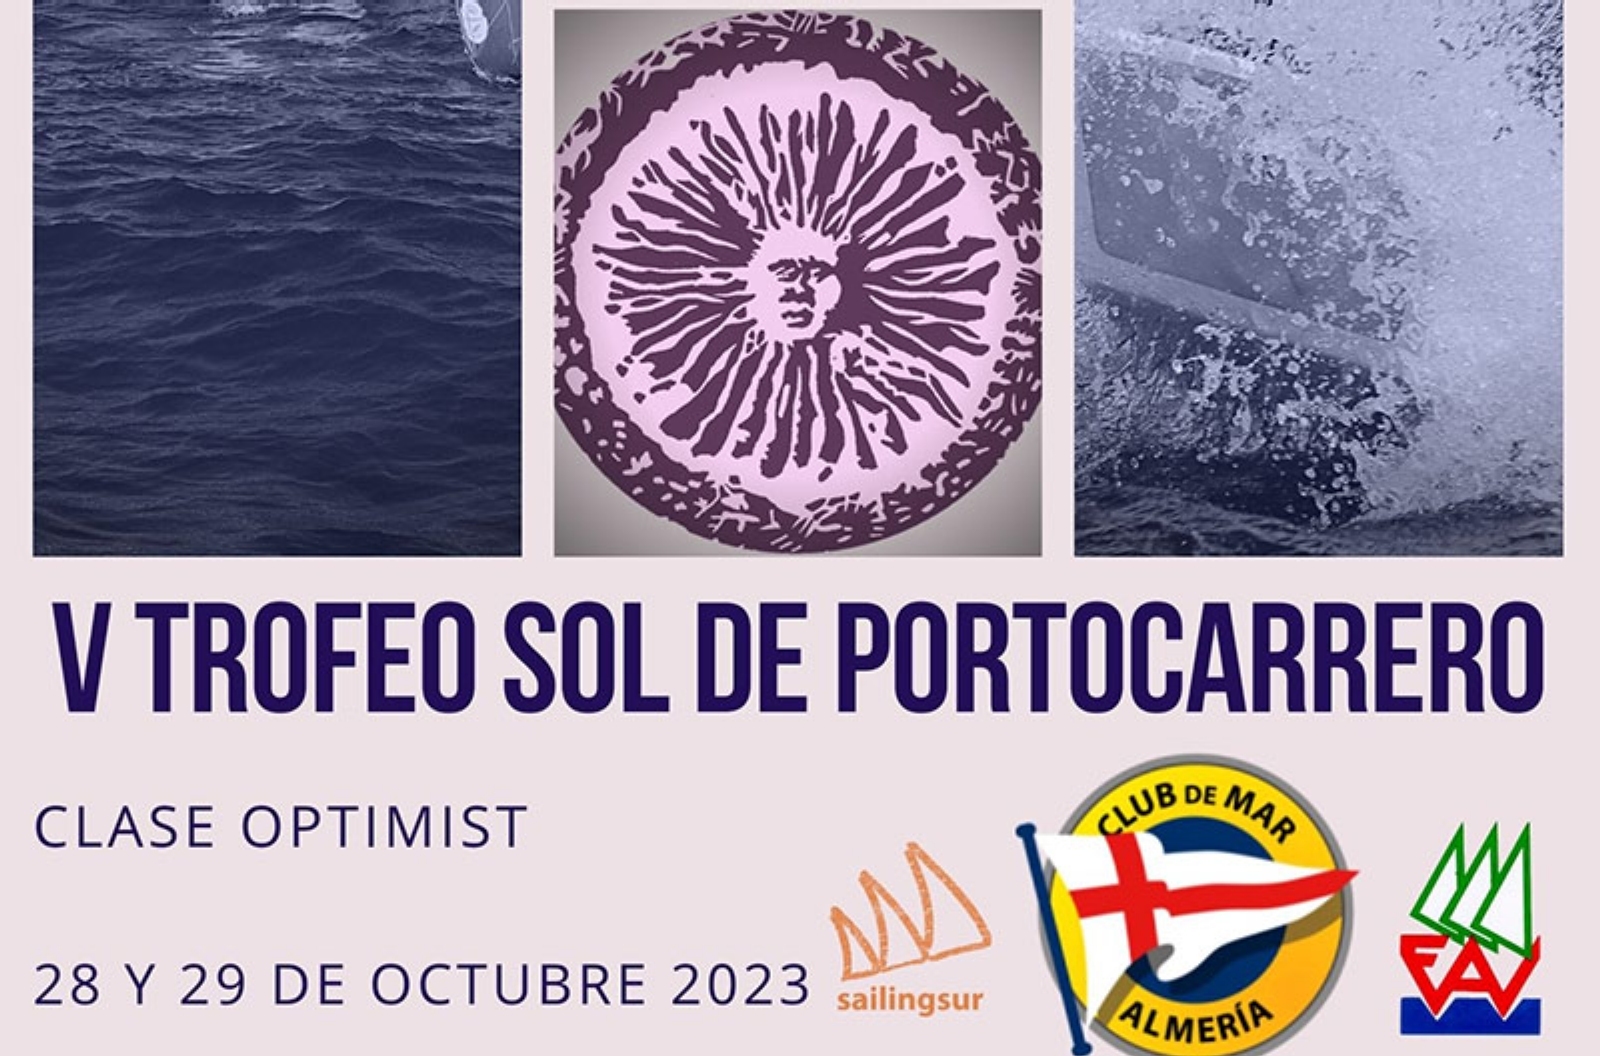 El Trofeo Sol de Portocarrero de Optimist 2023